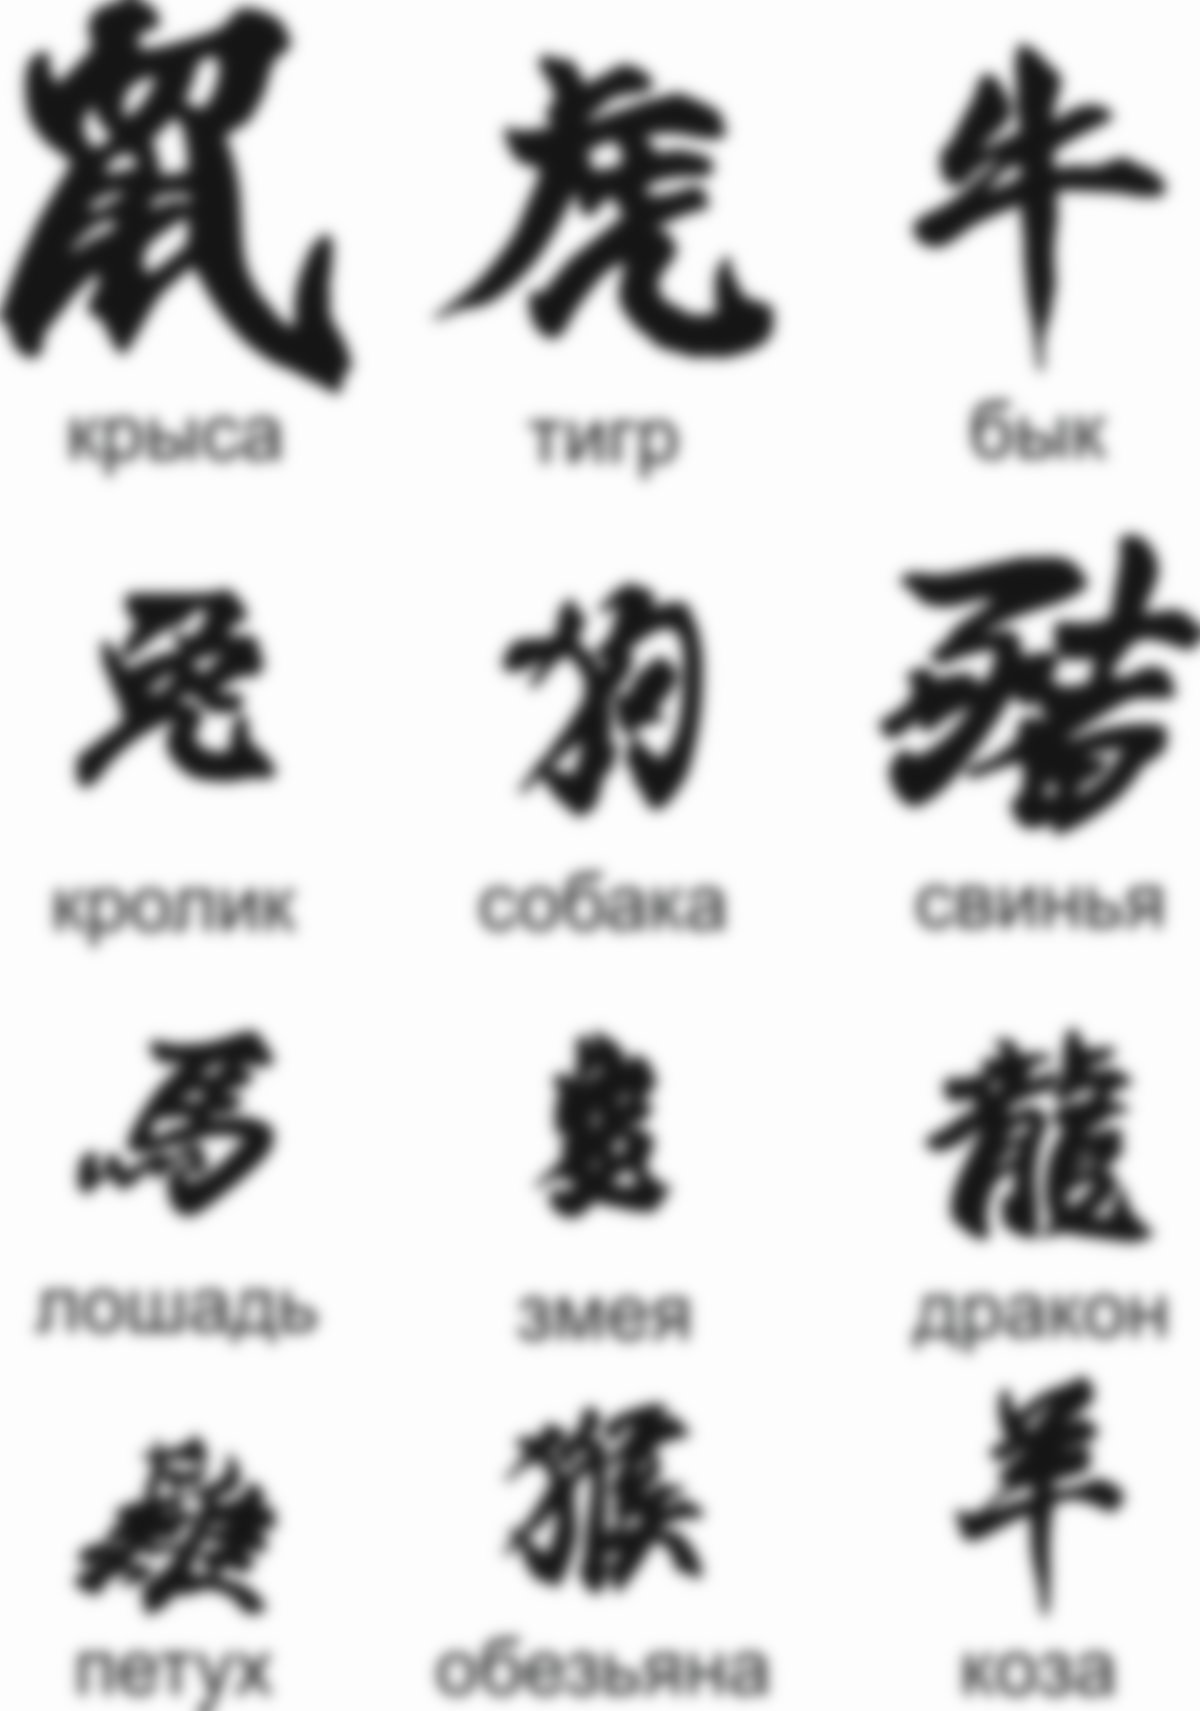 тату иероглифы с переводом на русский